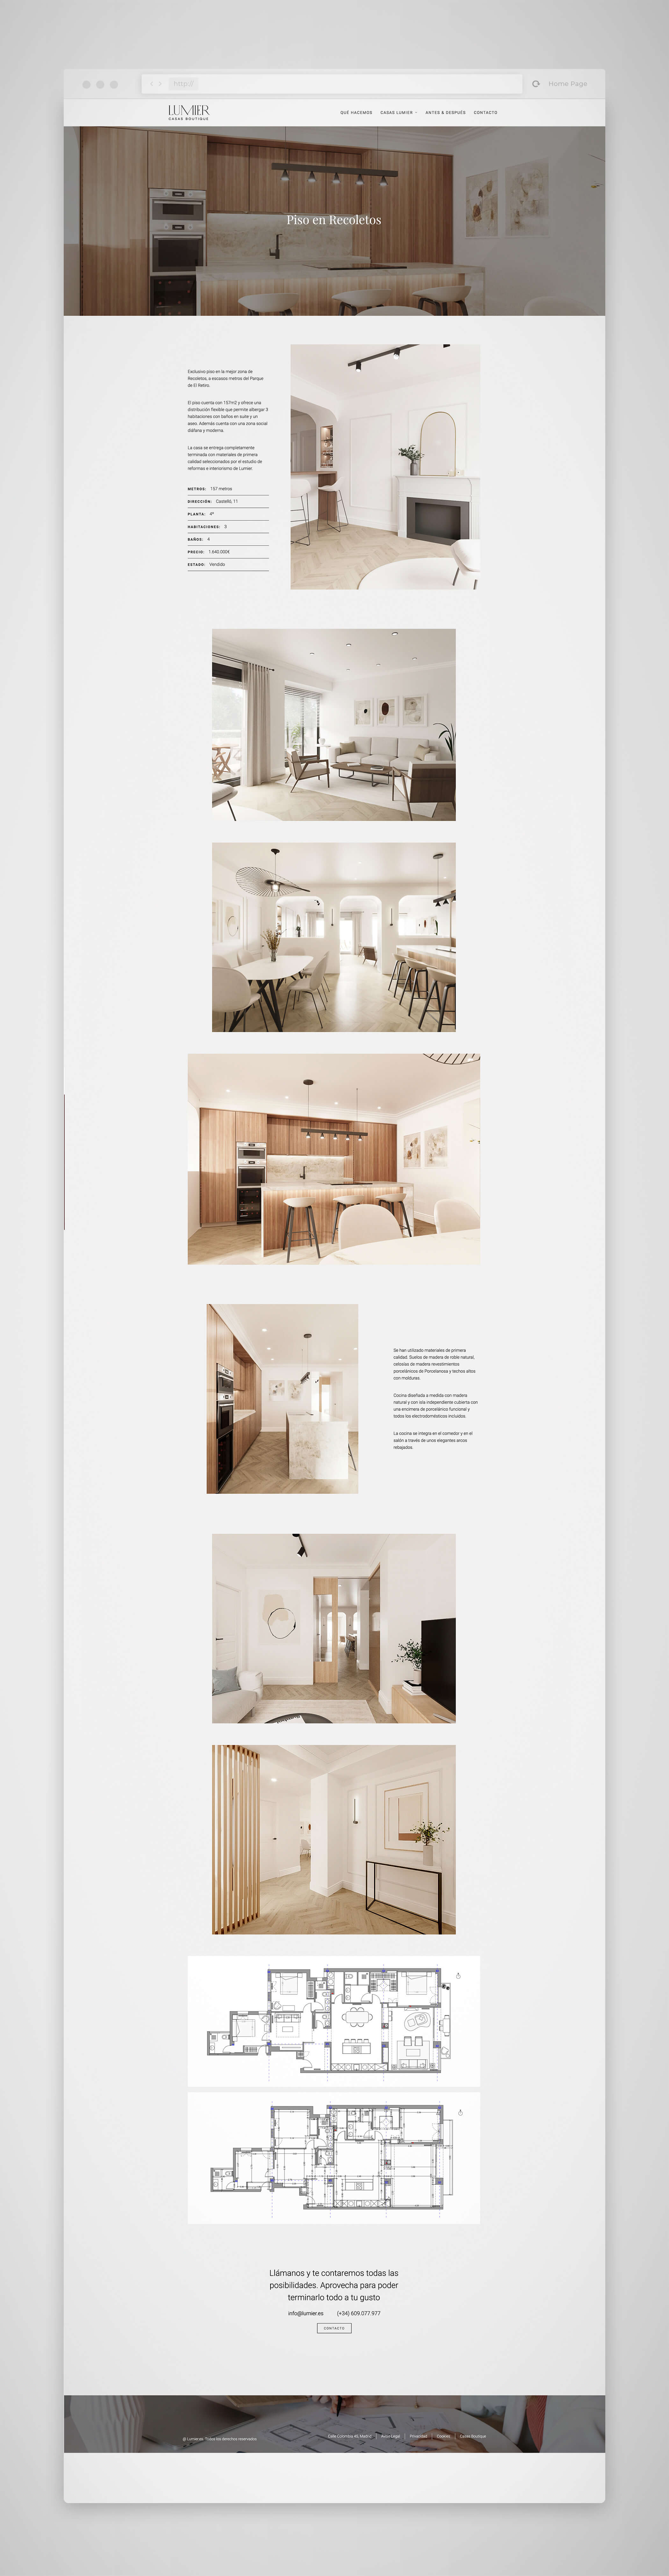 web lumier 1 - Diseño páginas web Madrid, Lumier casas boutique